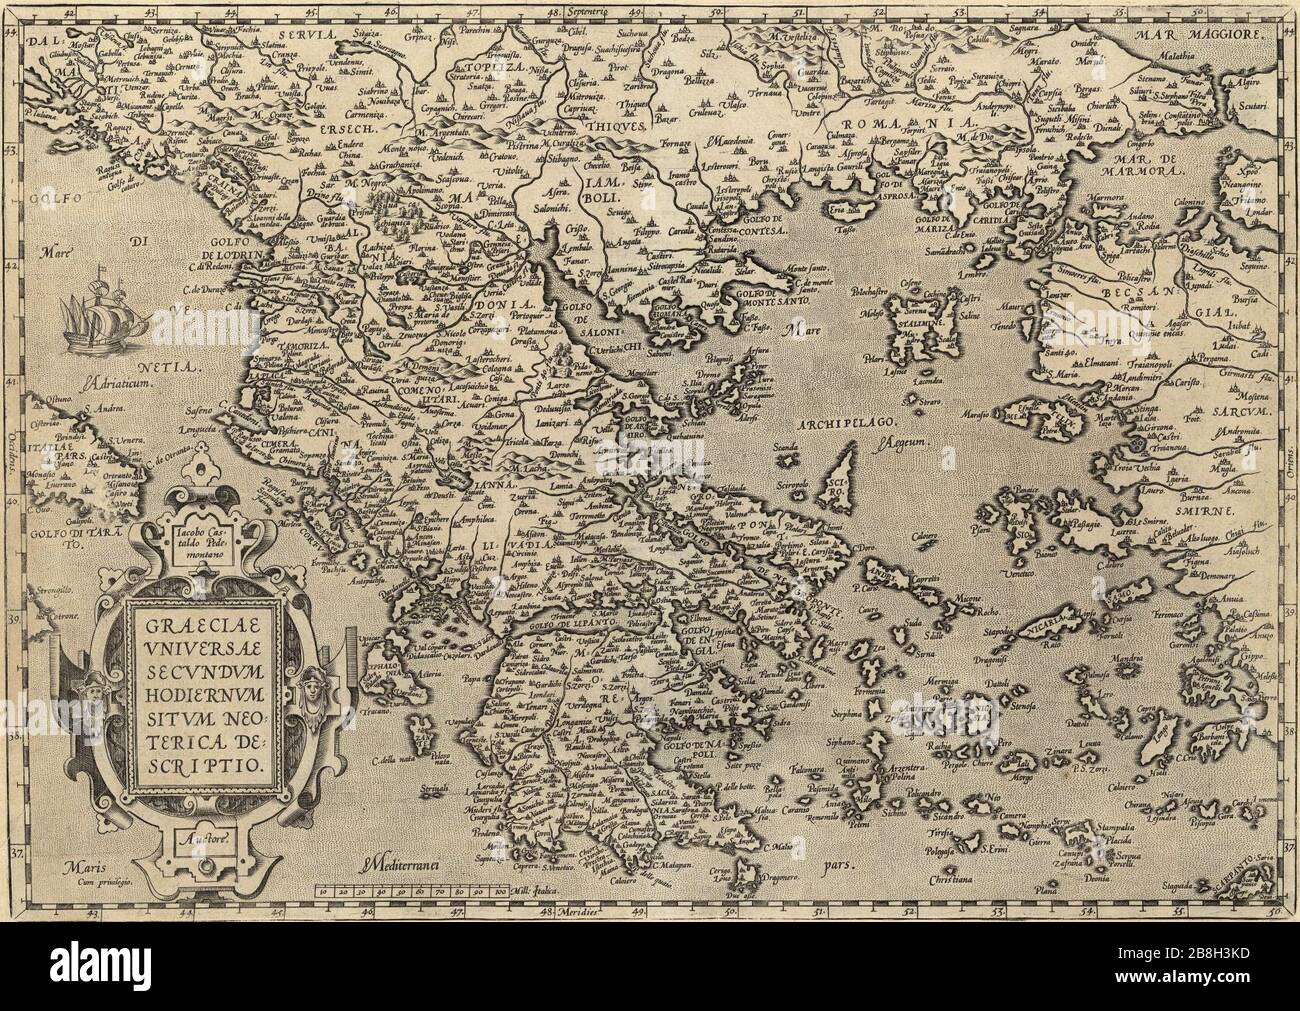 Graeciae - carte de la Grèce du XVIe siècle. Banque D'Images